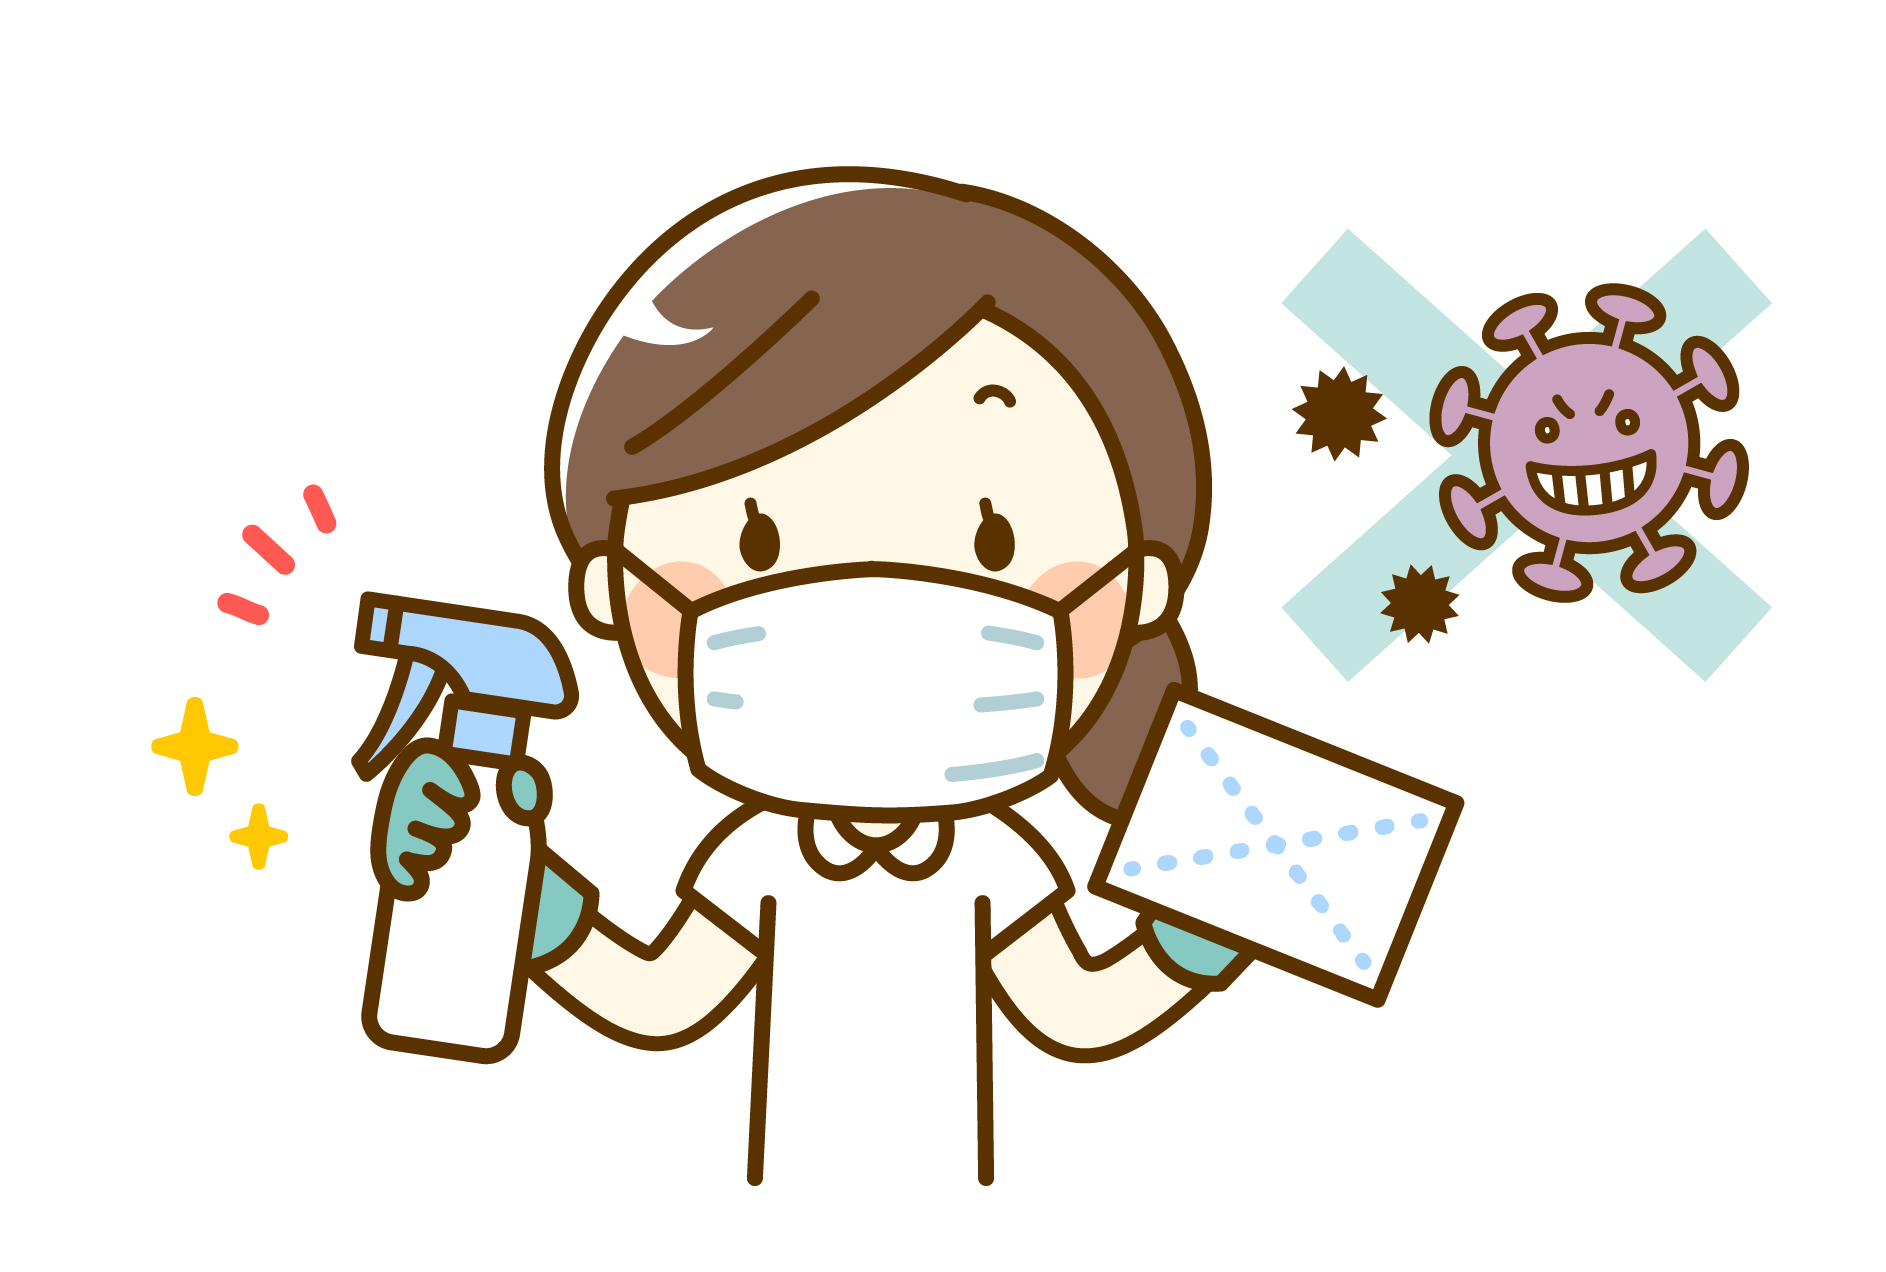 ノロウイルスの主な感染経路と感染防止対策について解説